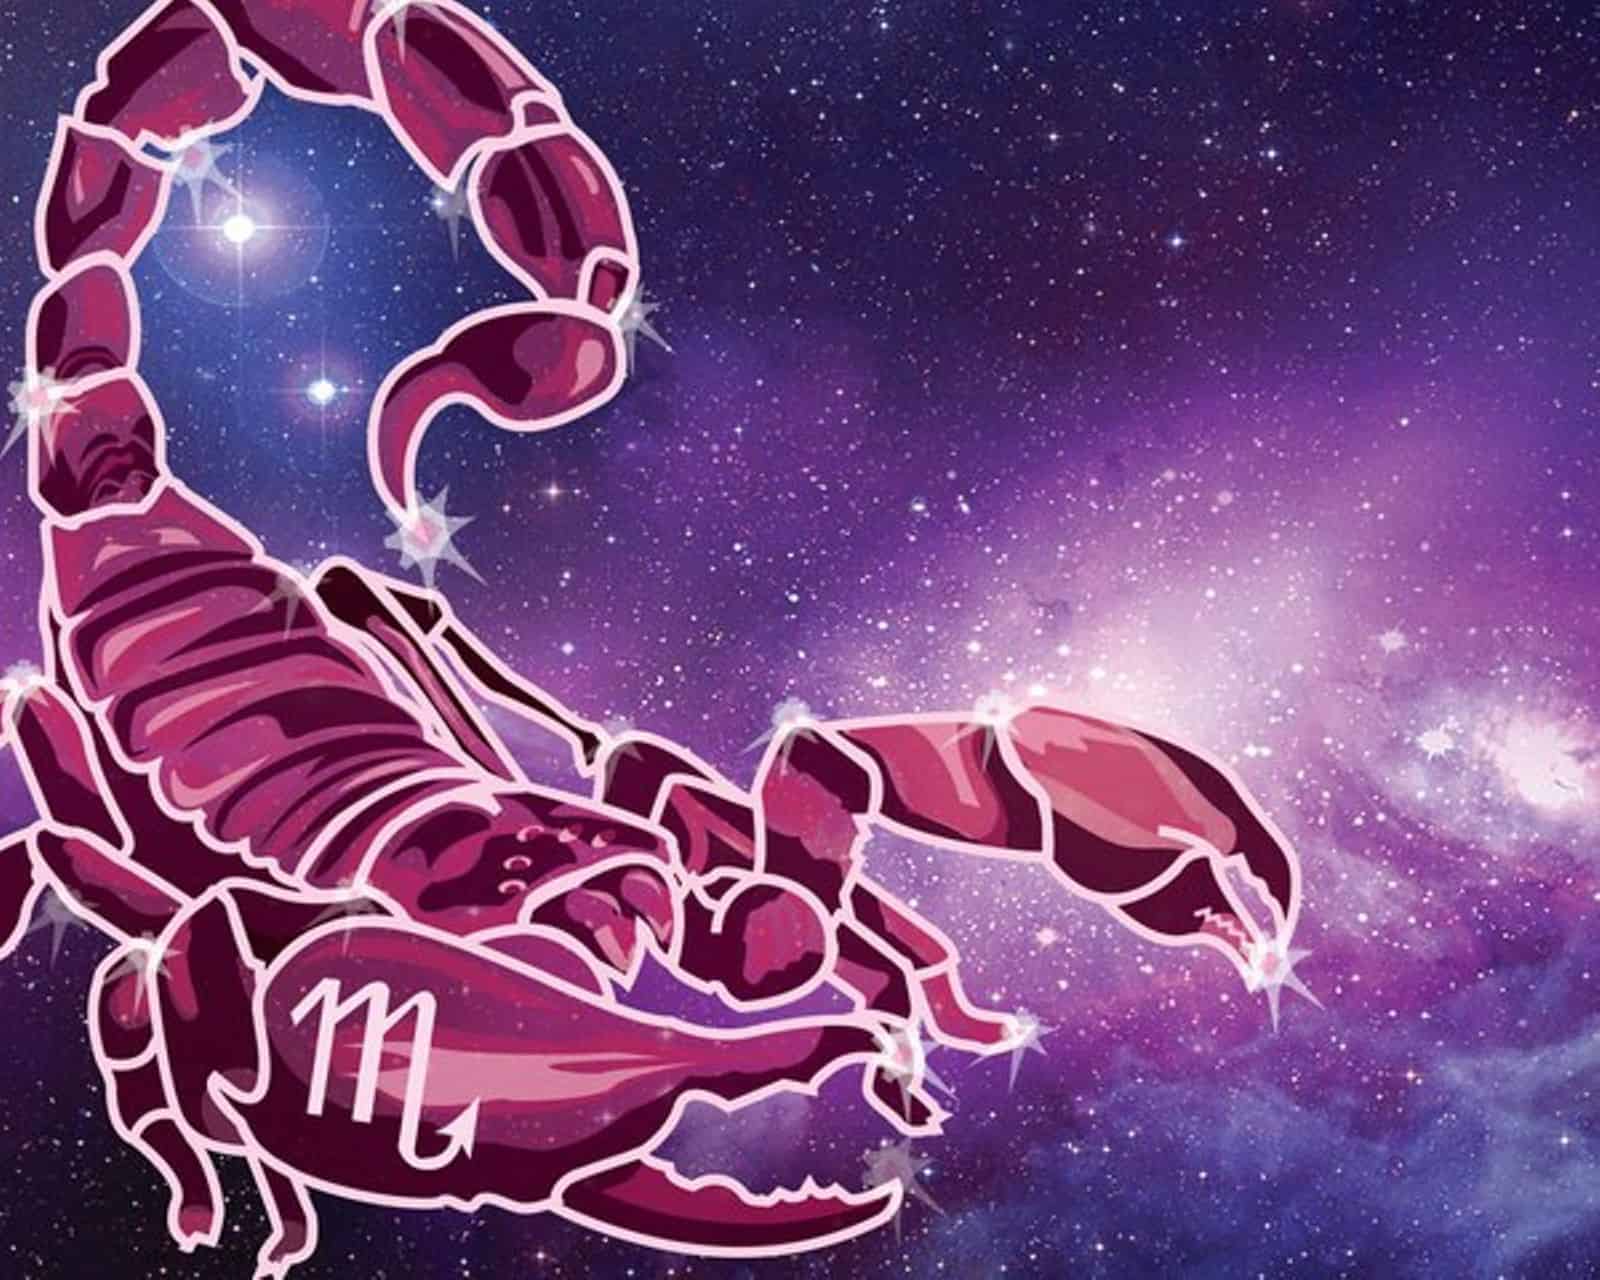 Апрель 2024 гороскоп скорпион женщина самый точный